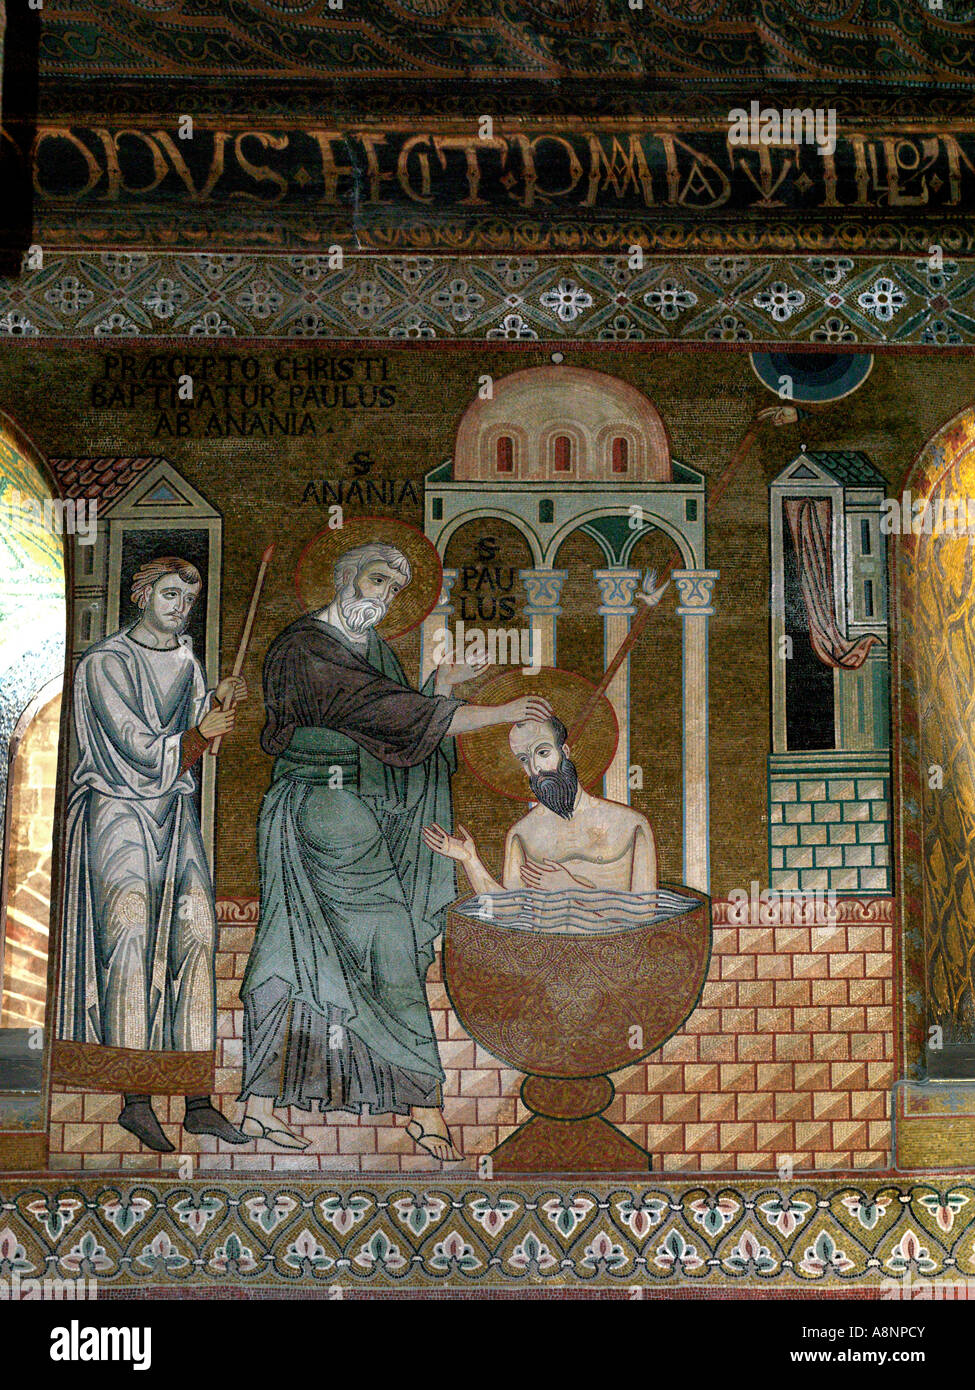 Sicile Italie Palerme La Chapelle Palatine dans le Palais Norman mosaïque dans les allées St Paul St baptisant Anania Banque D'Images